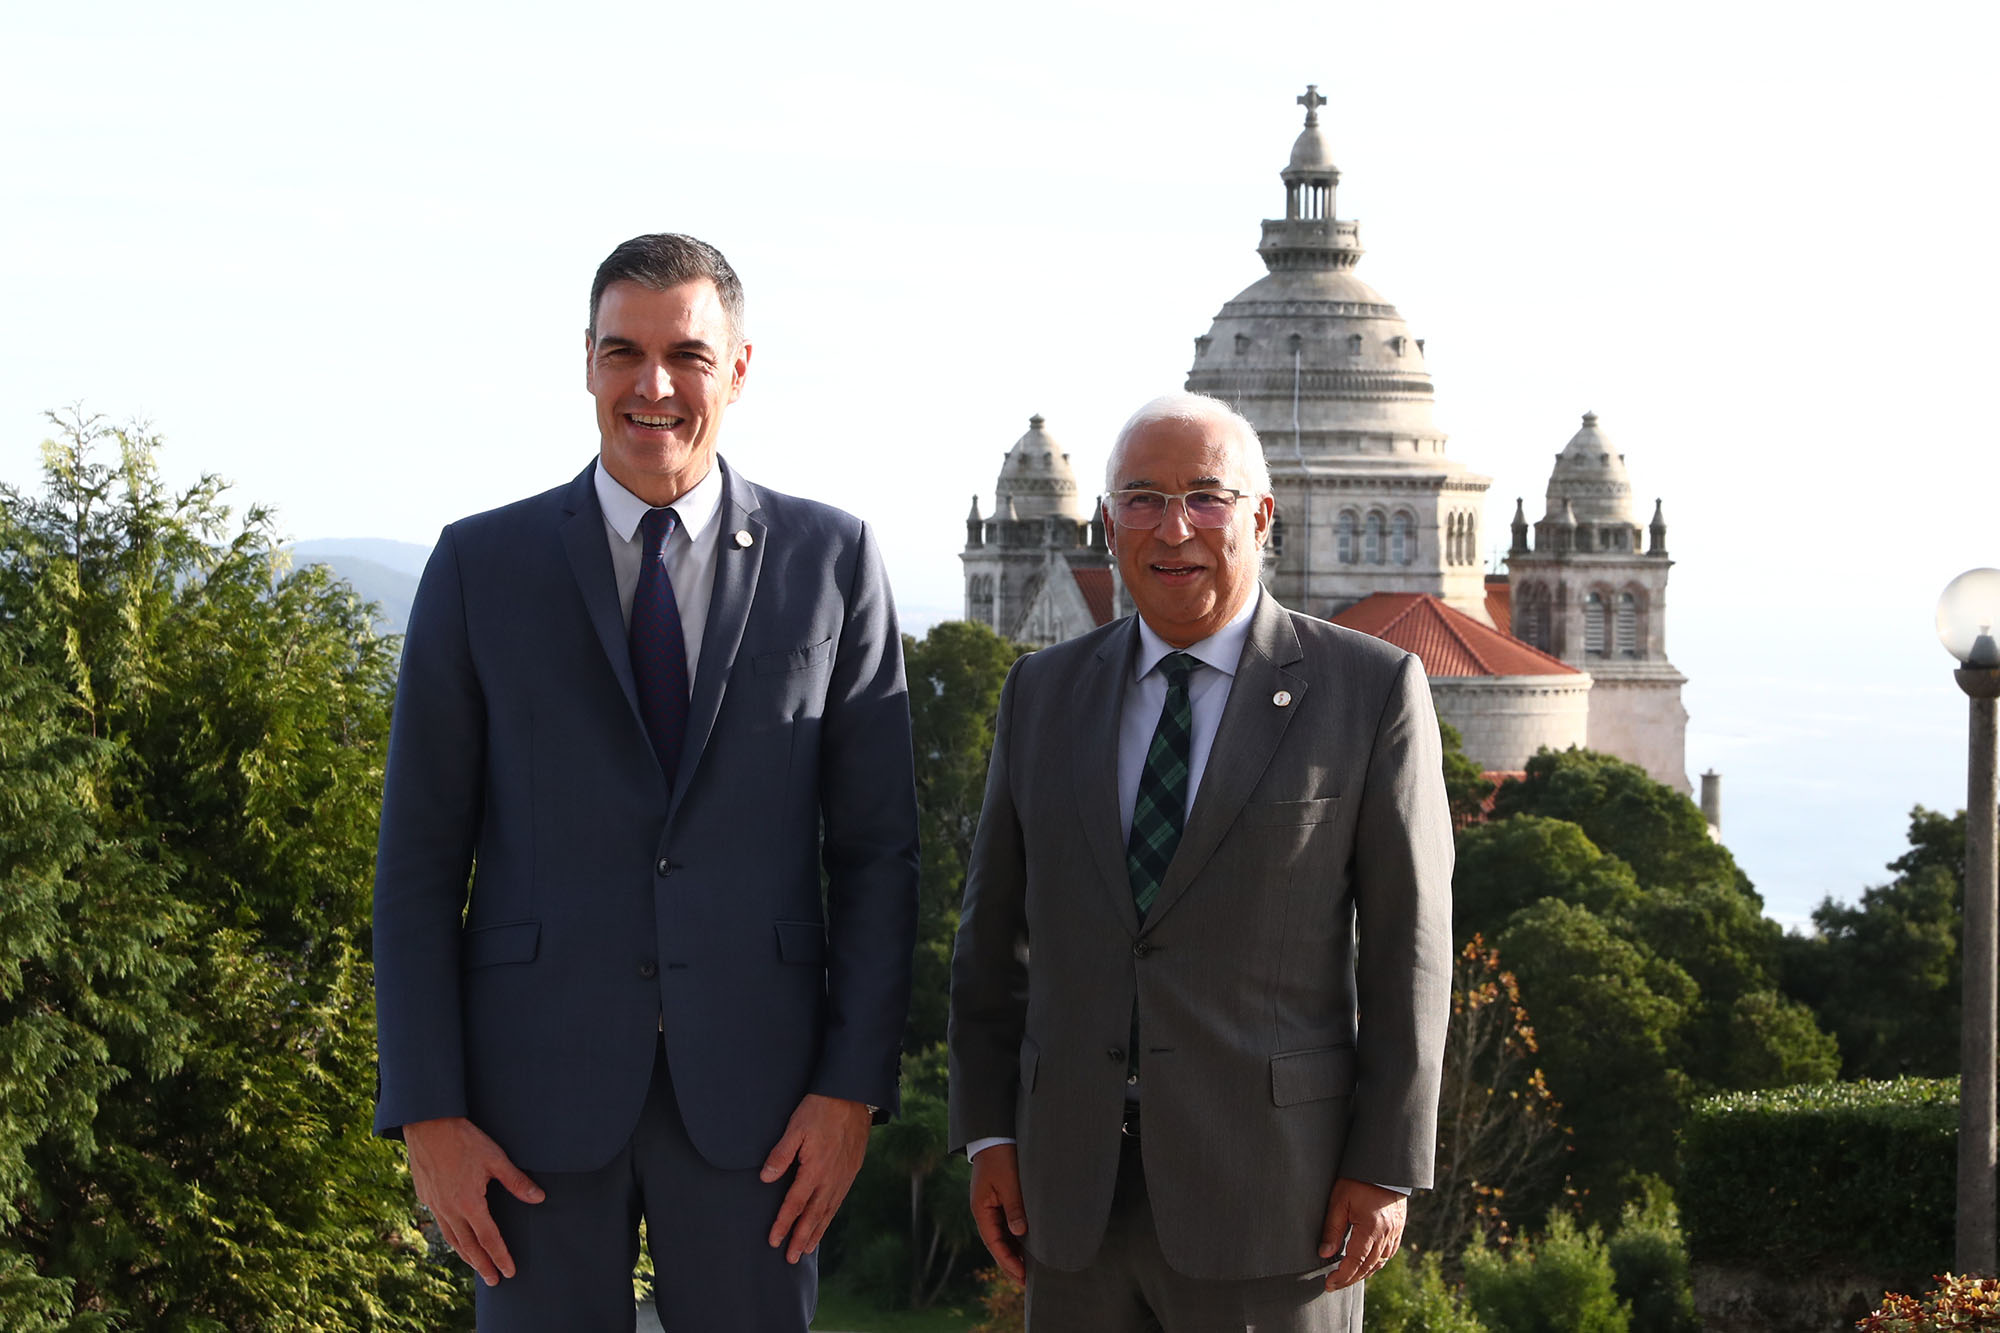 El presidente del Gobierno, Pedro Sánchez, y el primer ministro de Portugal, António Costa